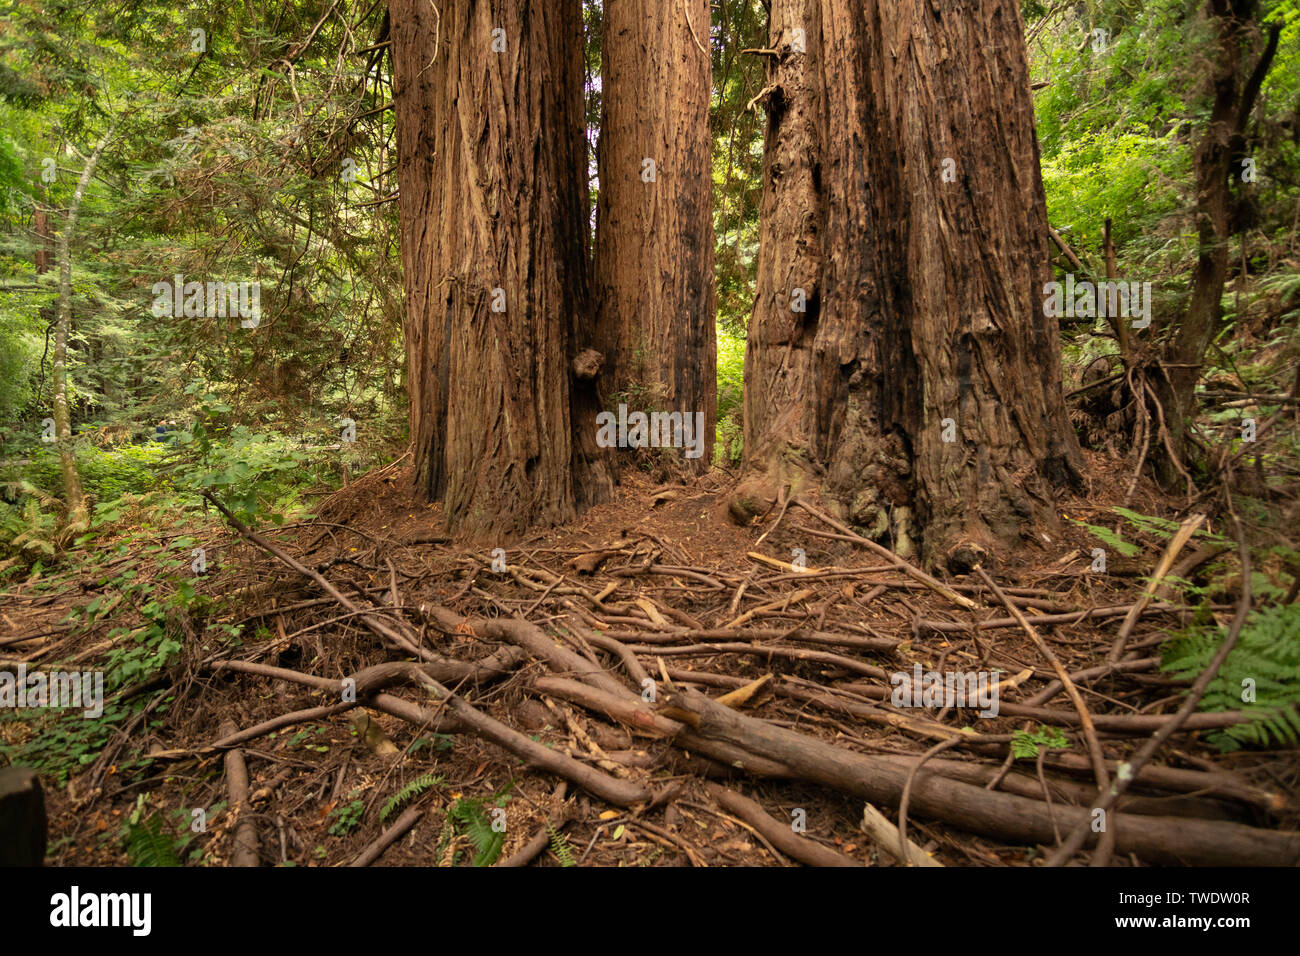 Certains débris de la direction générale à la base de gros bois rouge des arbres dans le Parc National de Muir Woods. Connu pour les immenses séquoias juste au nord de San Francisco. Banque D'Images